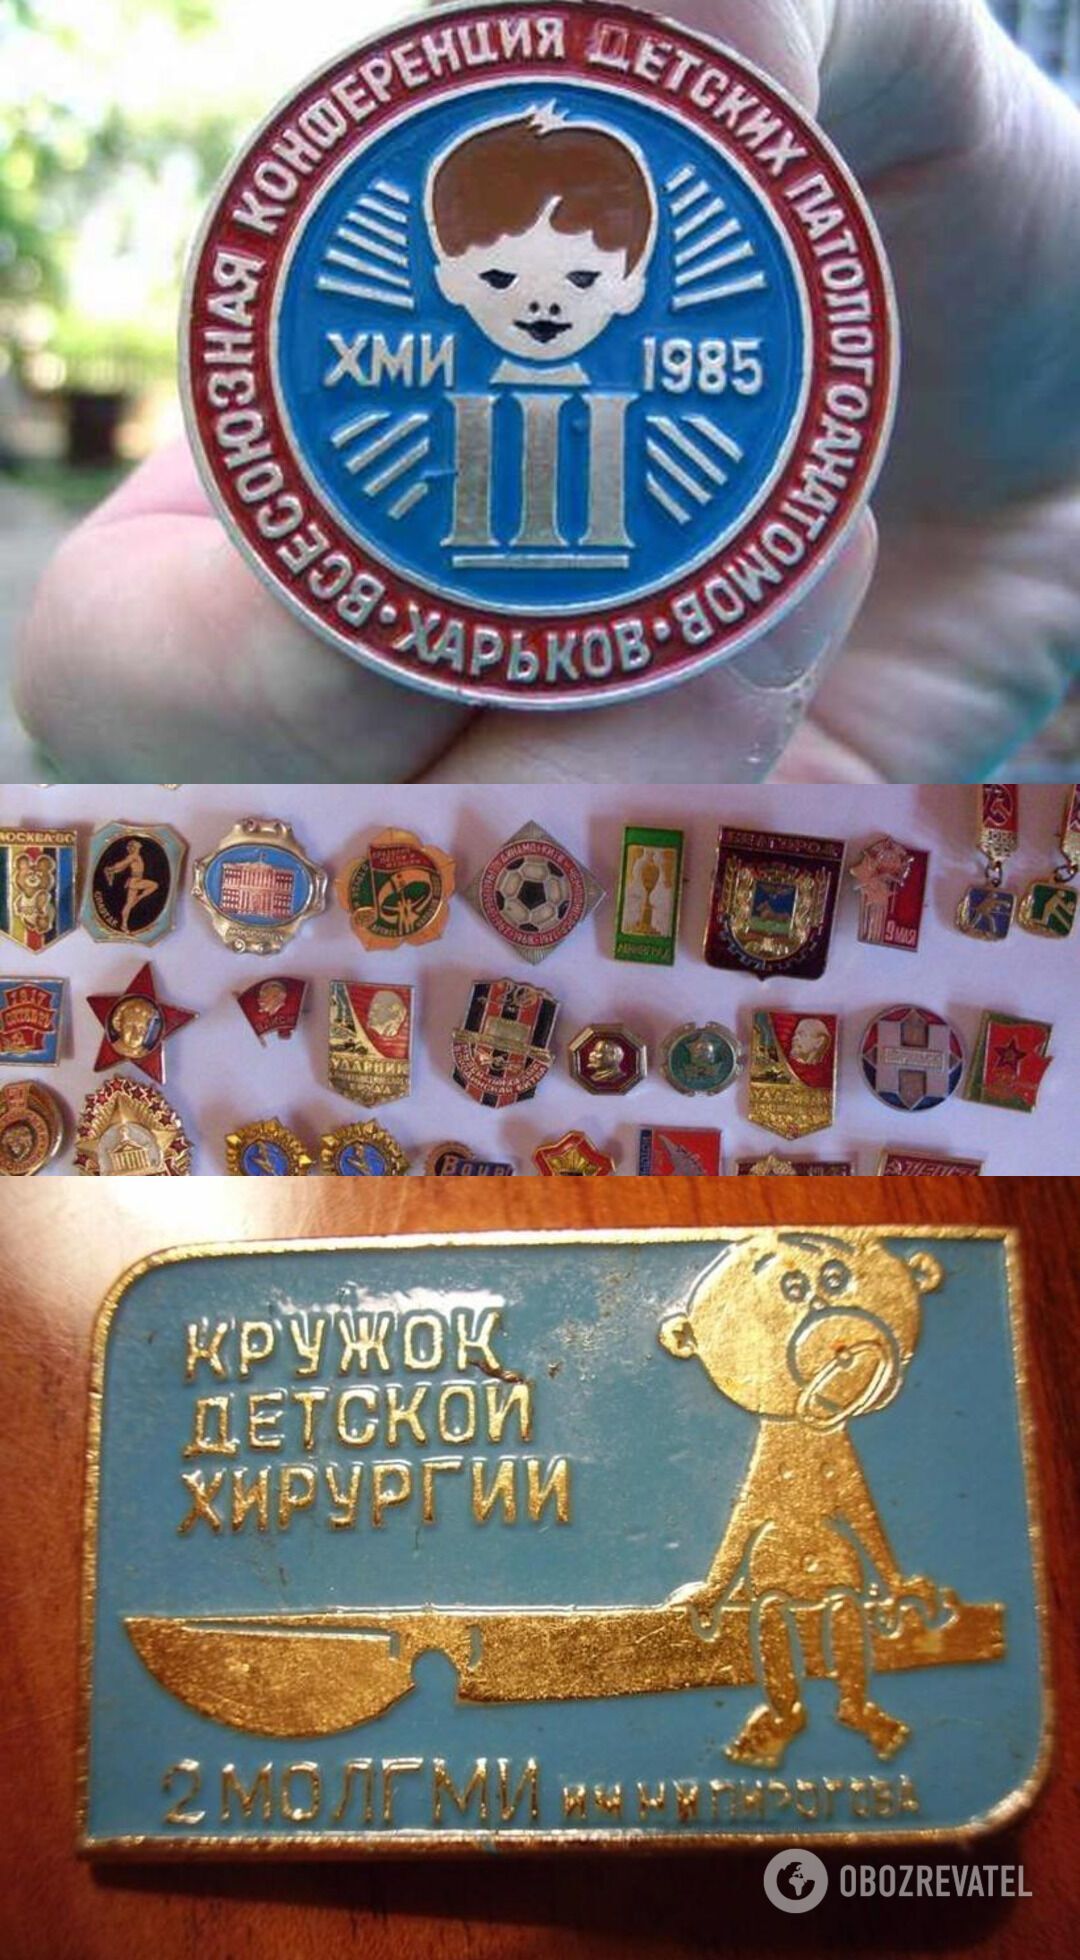 В СССР часто давали значки за какое-то достижение, в результате у многих собирались целые коллекции